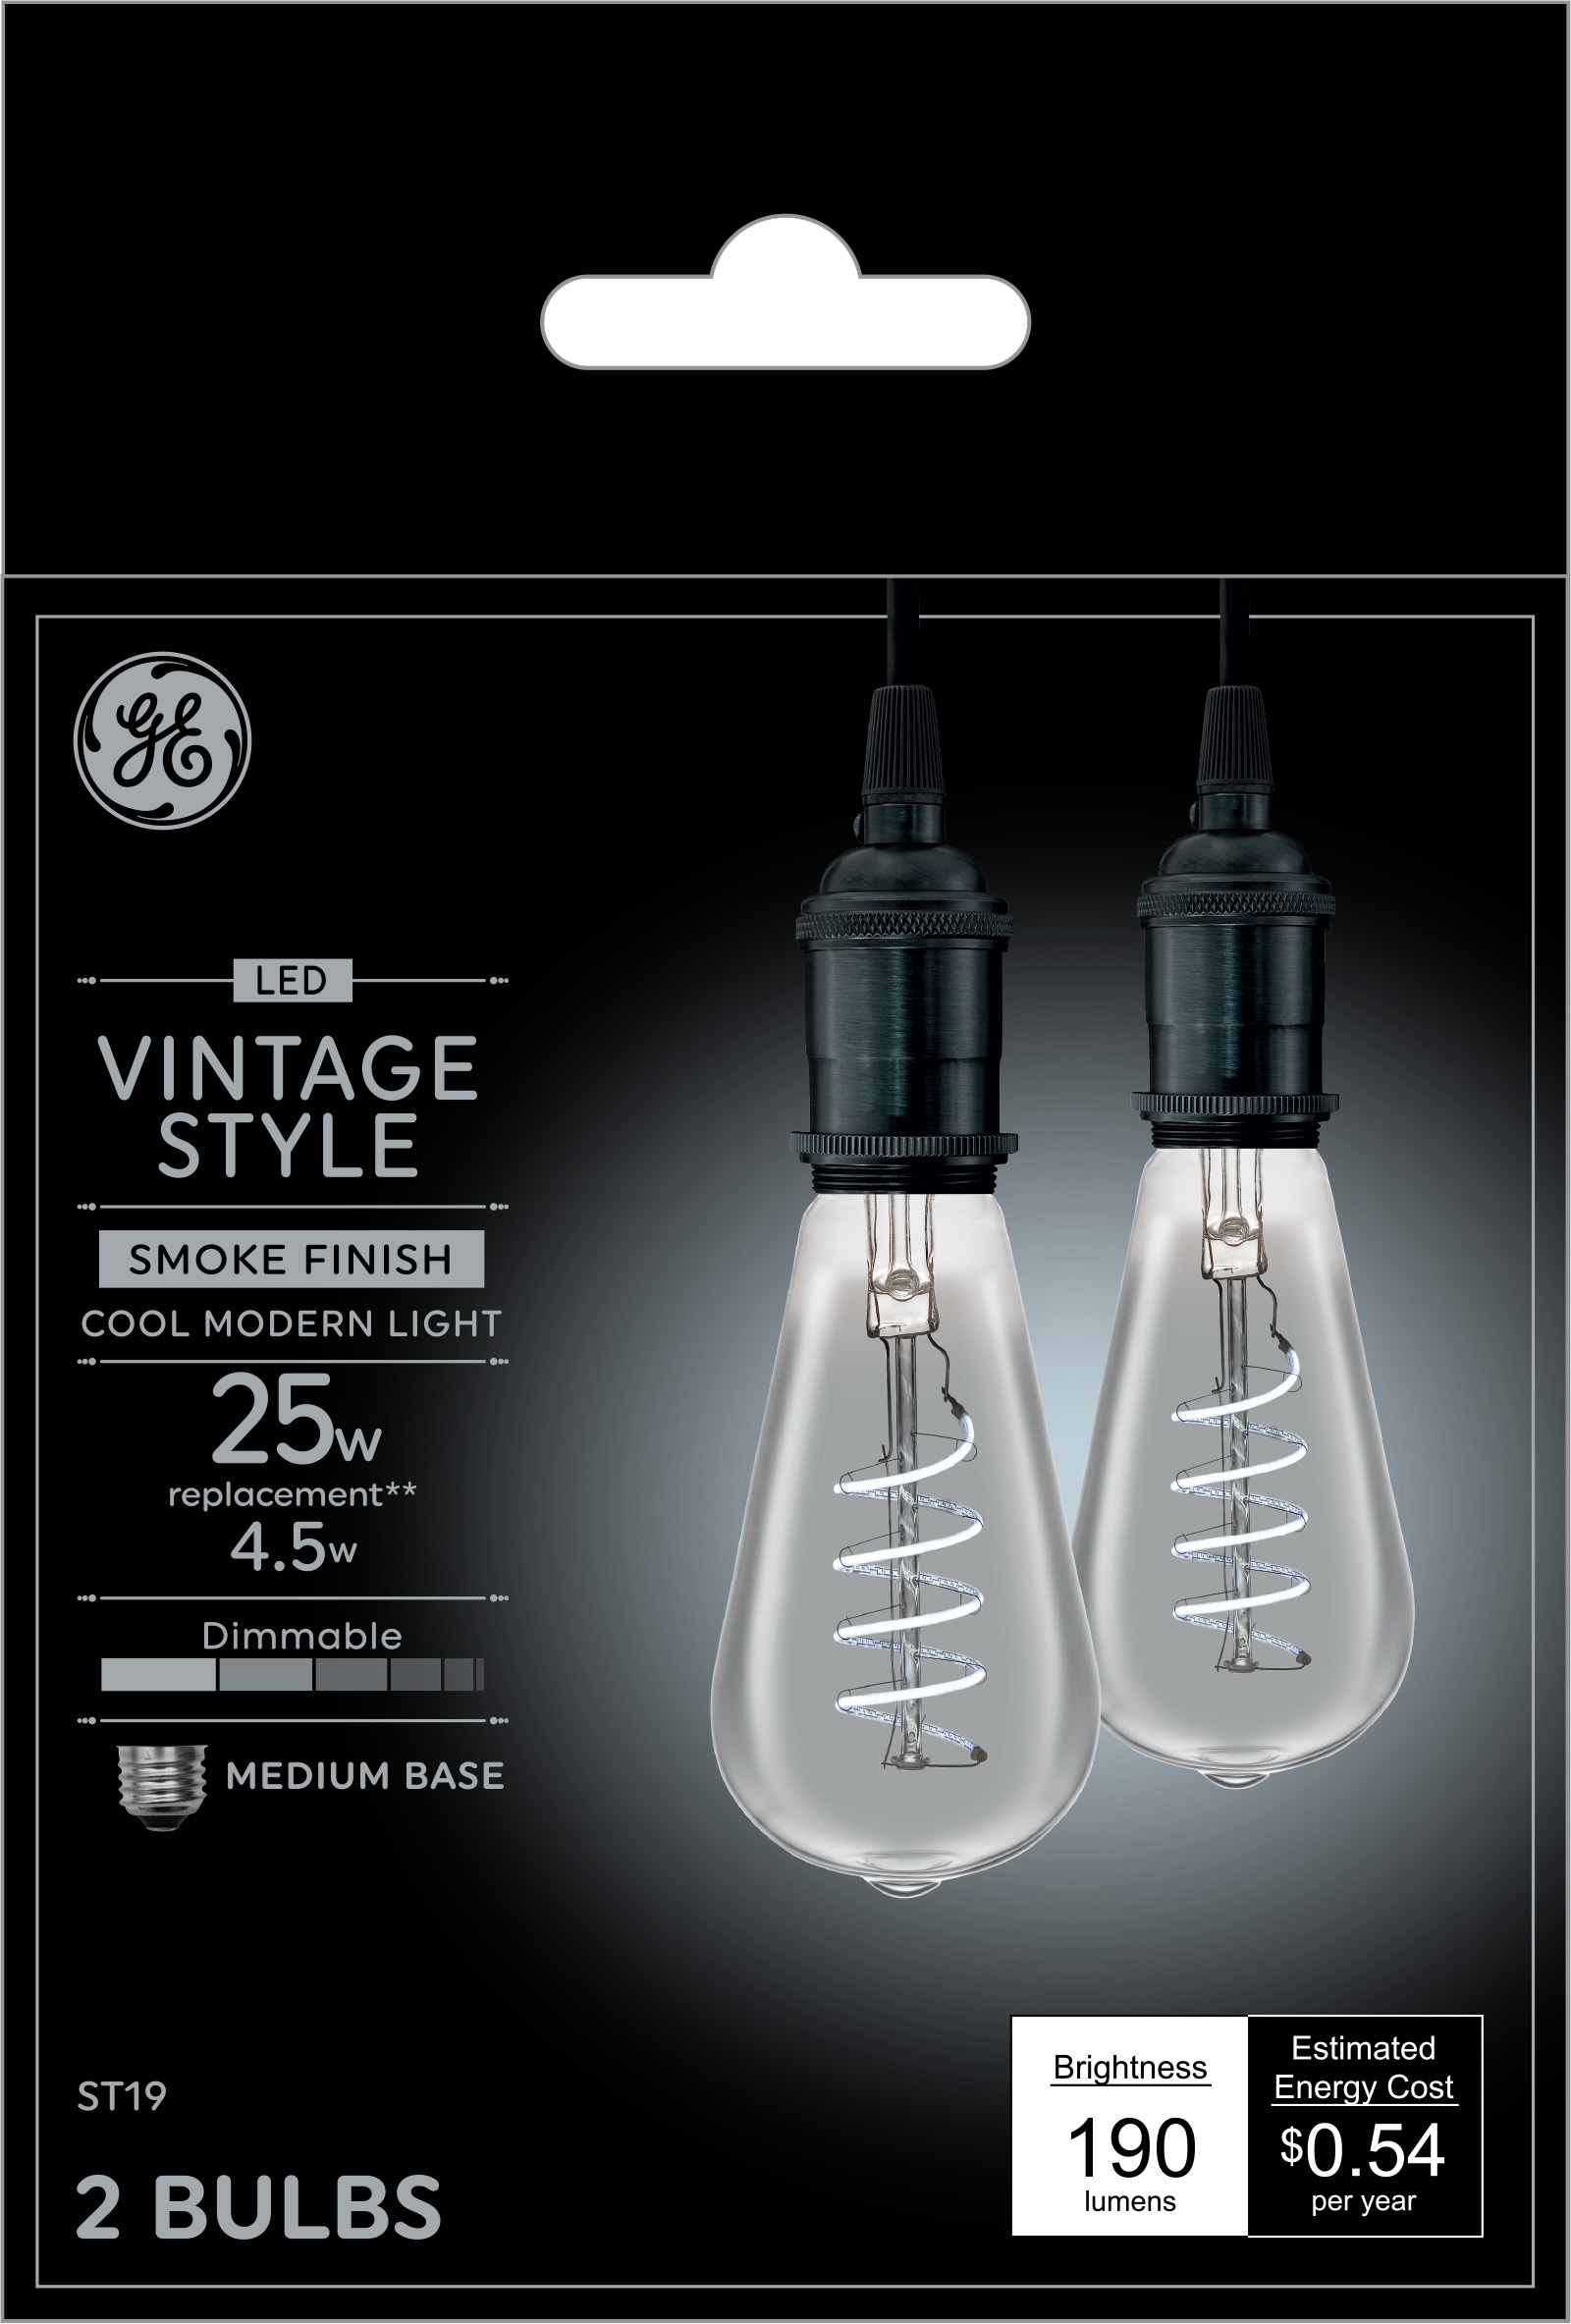 Fancy Dimmable LED Light Bulbs  Filament bulb lighting, Light